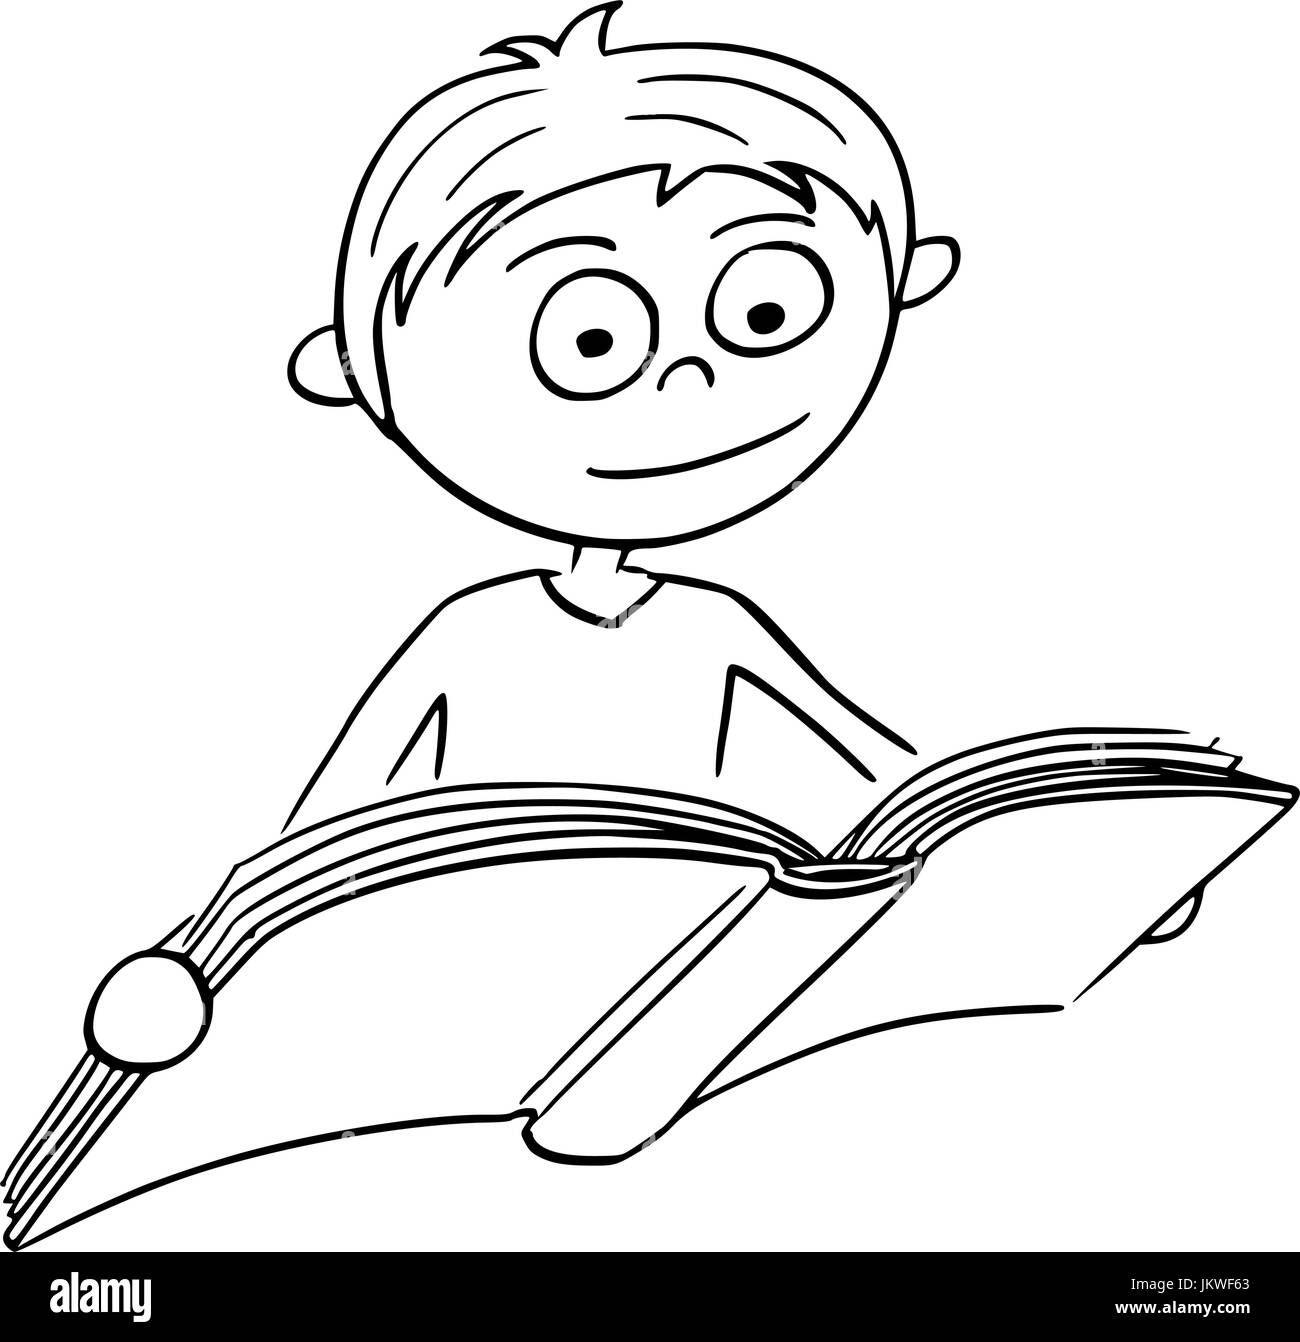 Disegno a mano cartoon illustrazione vettoriale di boy la lettura di un libro. Illustrazione Vettoriale